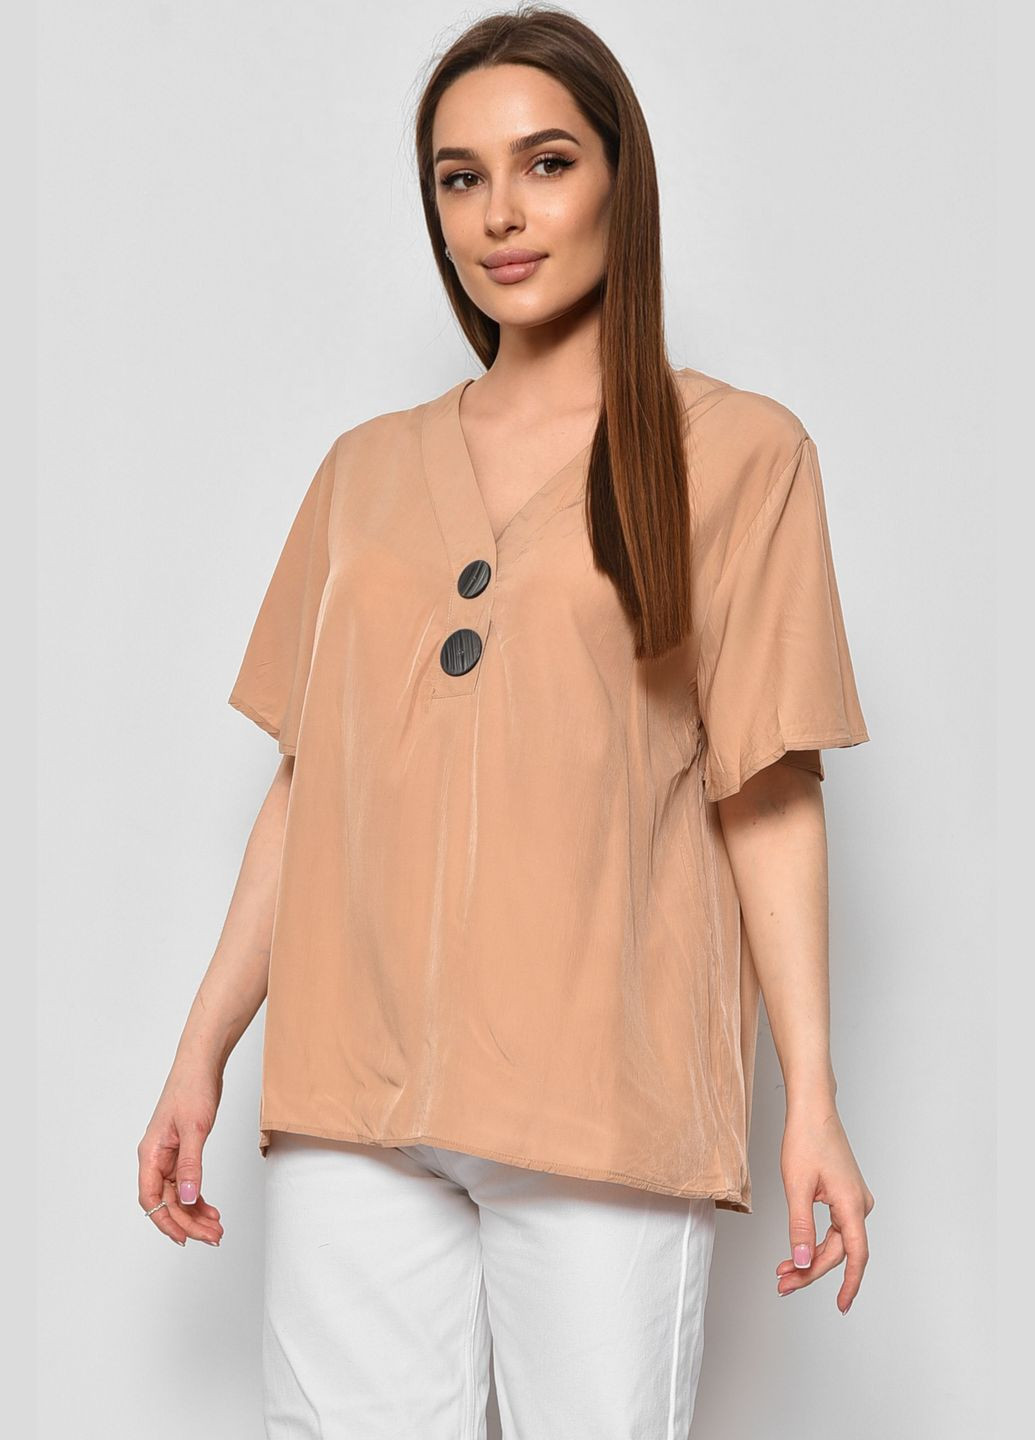 Бежевая блуза женская с коротким рукавом бежевого цвета с баской Let's Shop